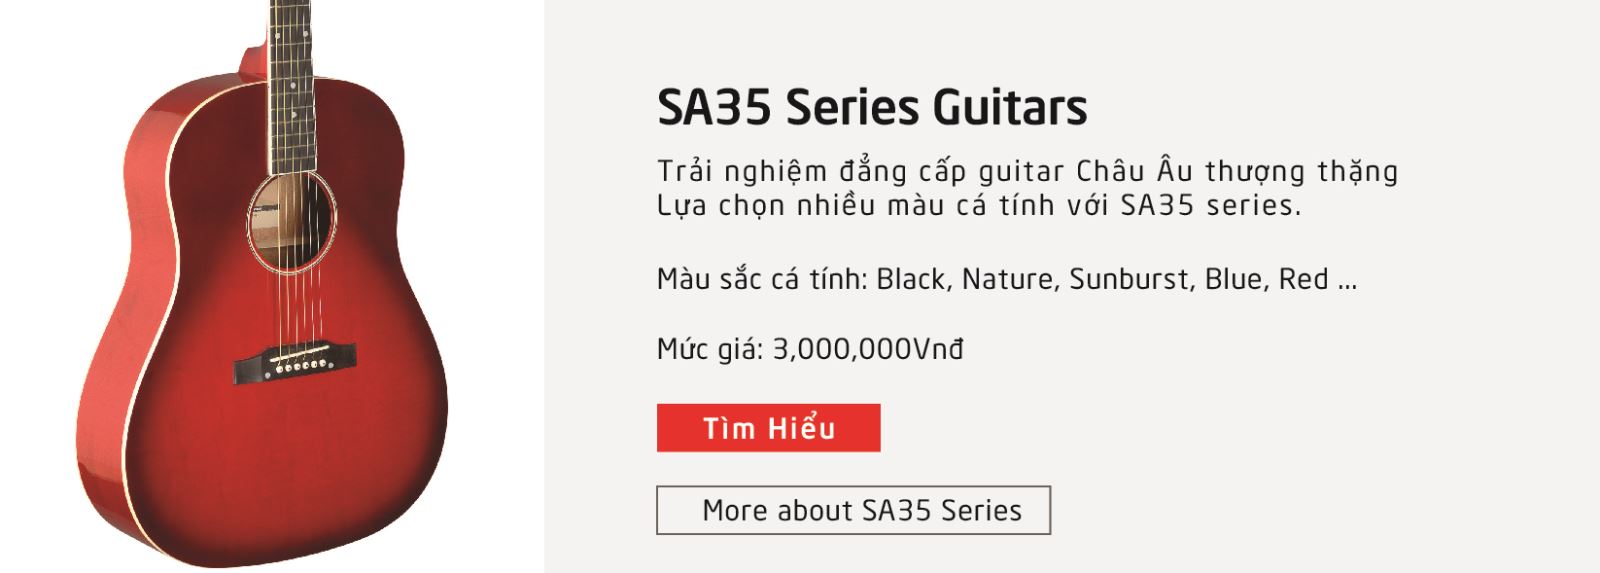 Giới thiệu hãng đàn guitar stagg dòng sản phẩm sa35 